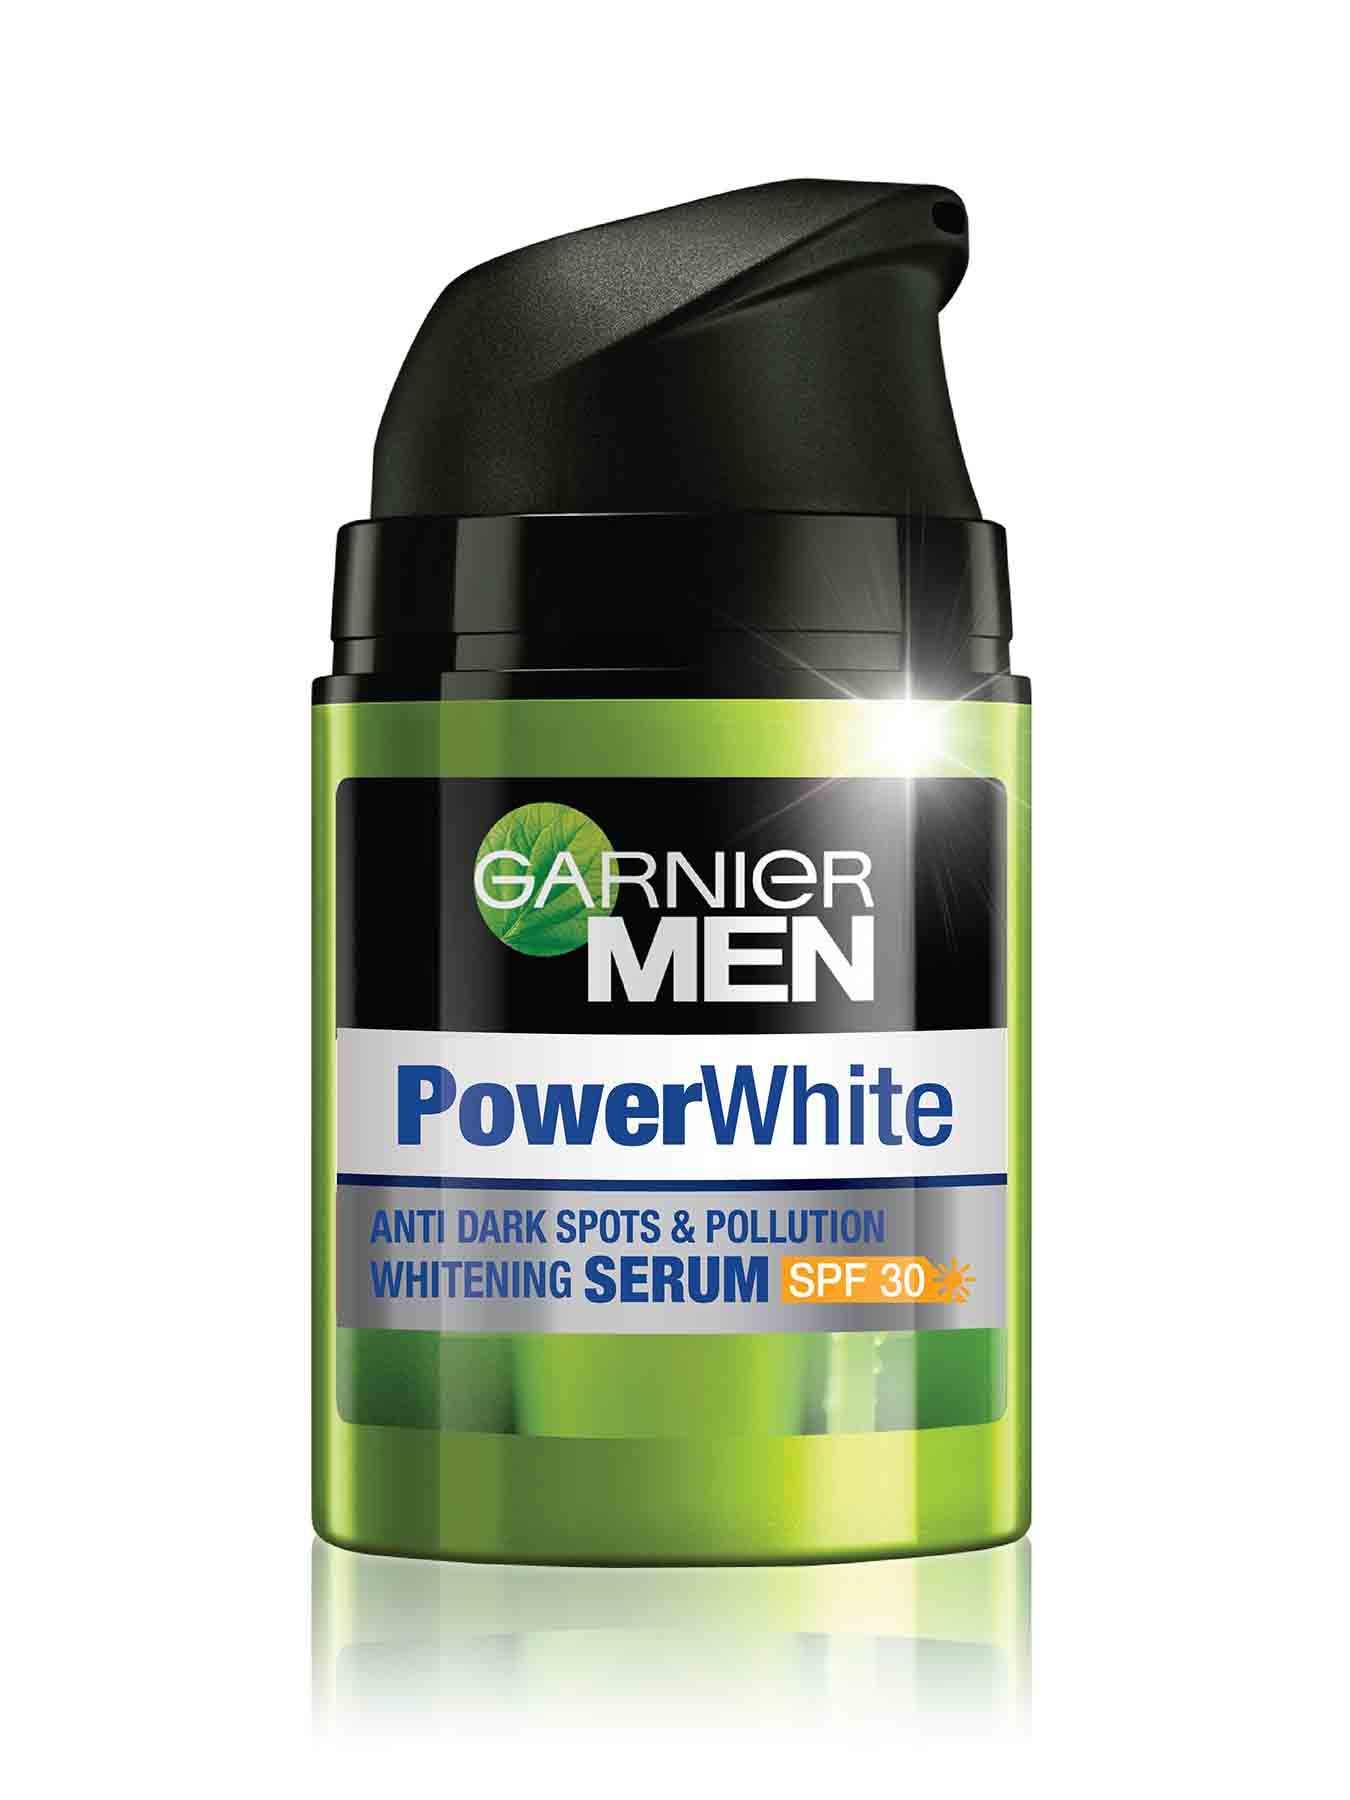 garnier men power white anti dark spots pollution whitening serum spf 30